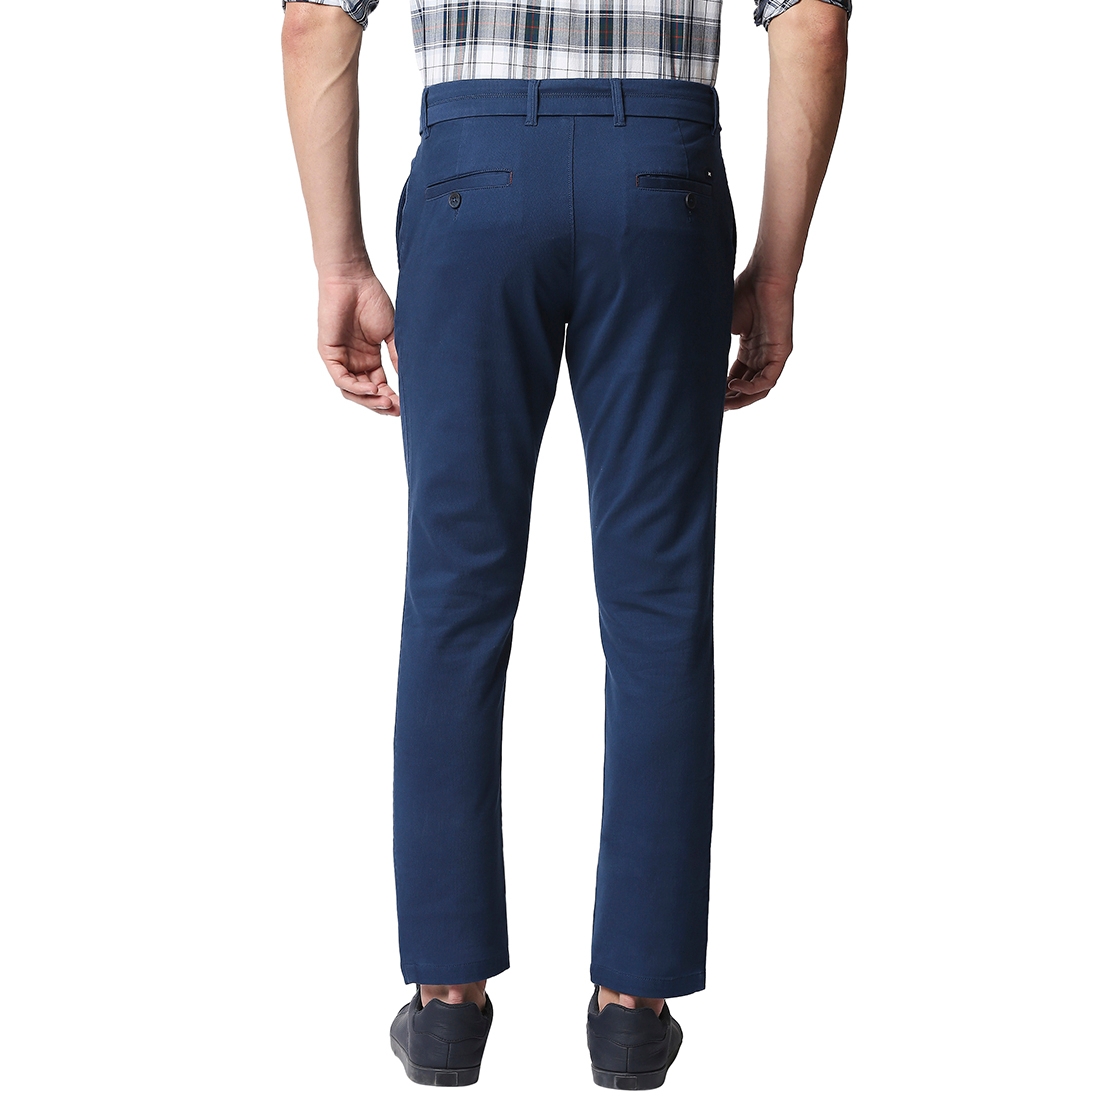 Basics | Men's Blue Cotton Blend Solid Trouser 1